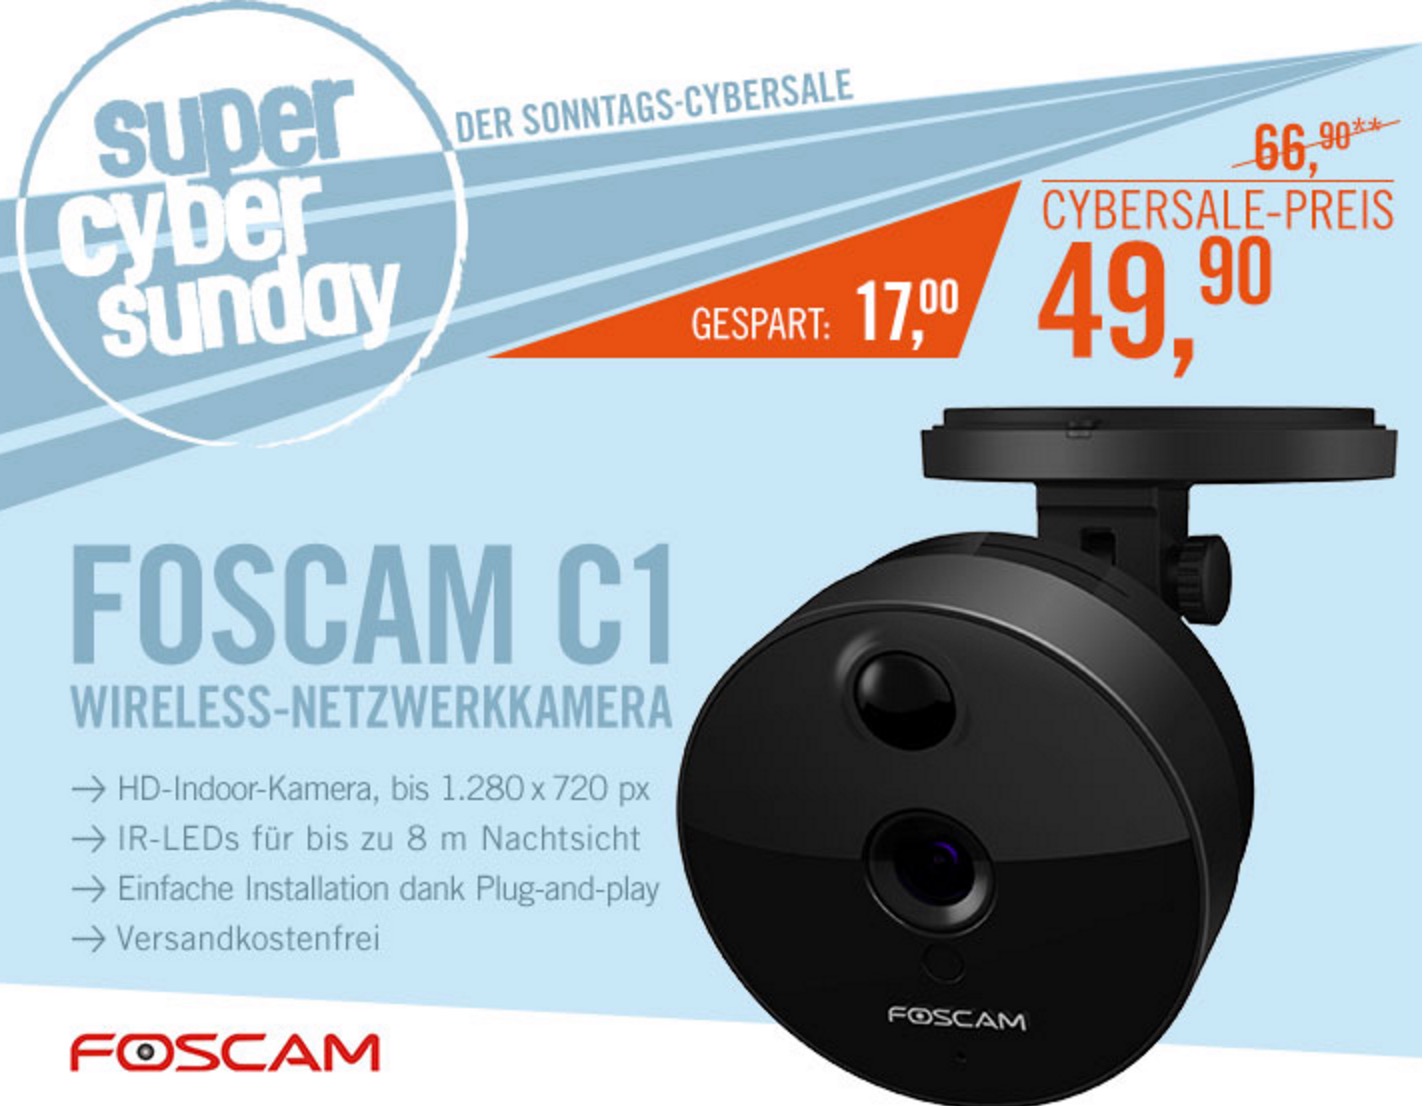 Foscam C1 Wireless Netzwerkkamera HD 720pfür nur 49,90 Euro inkl. Versand